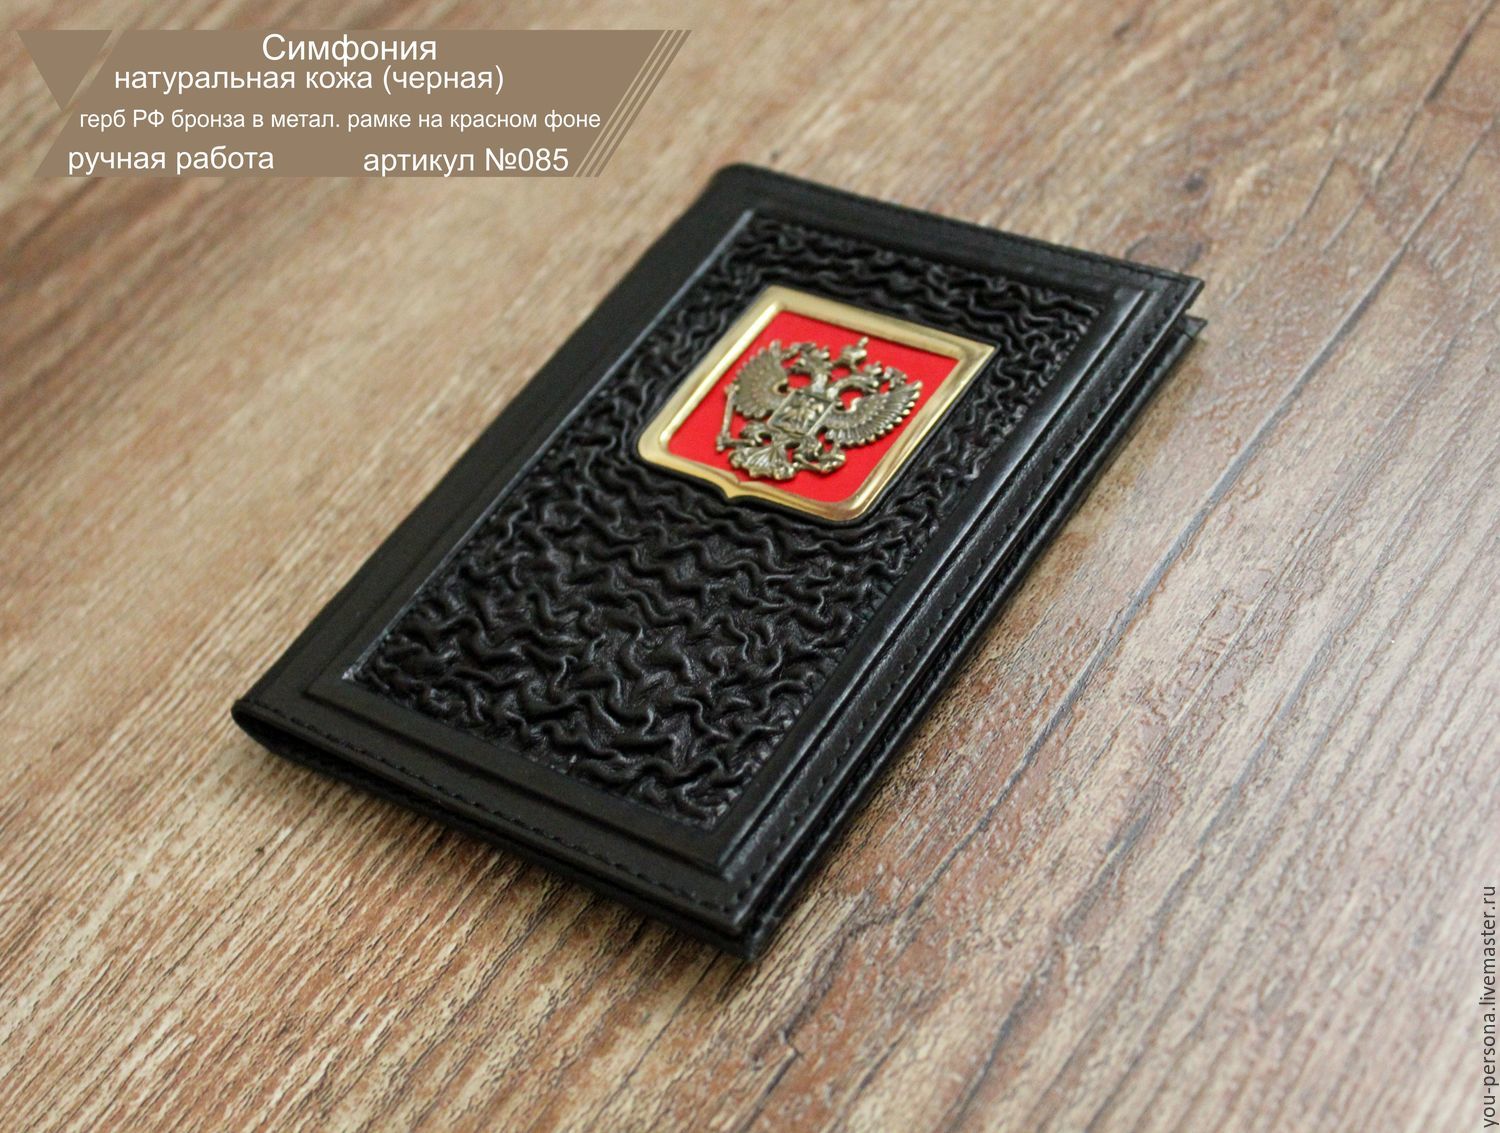 Кожаный паспорт "Симфония" ручная работа, натуральная кожа.герб бронза